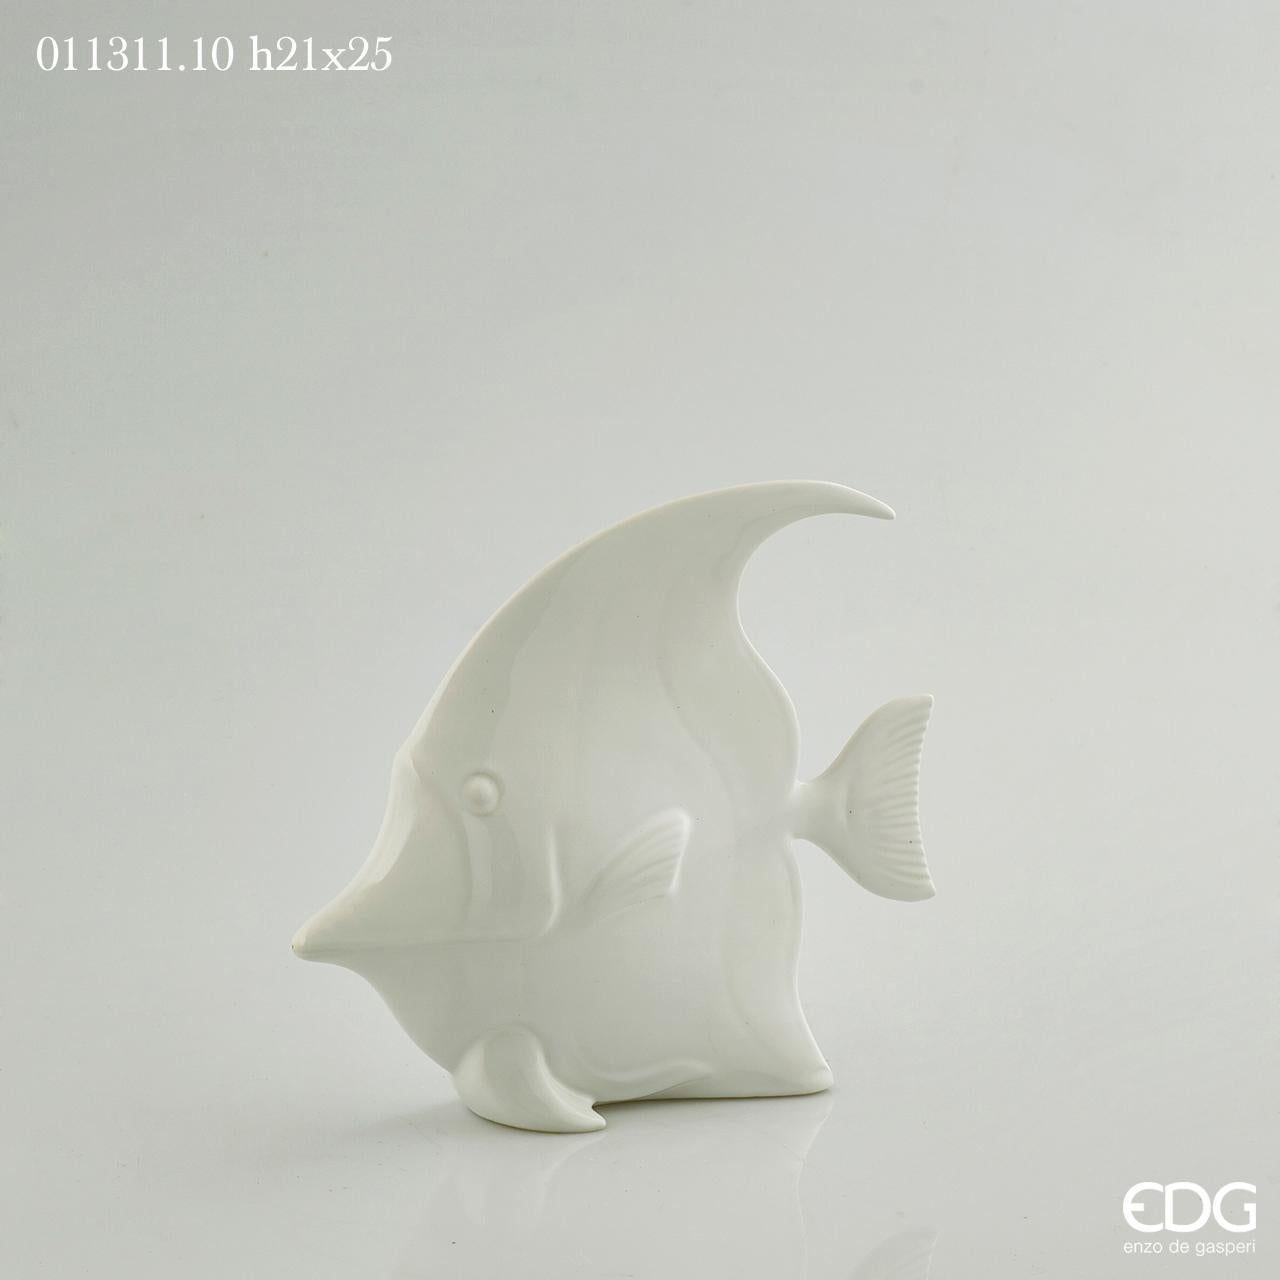 Pesce Disco in porcellana bianca. Dimensioni: cm 25 x 6,5 x 21 h Made in Italy. In negozio e online su tuttochic.it